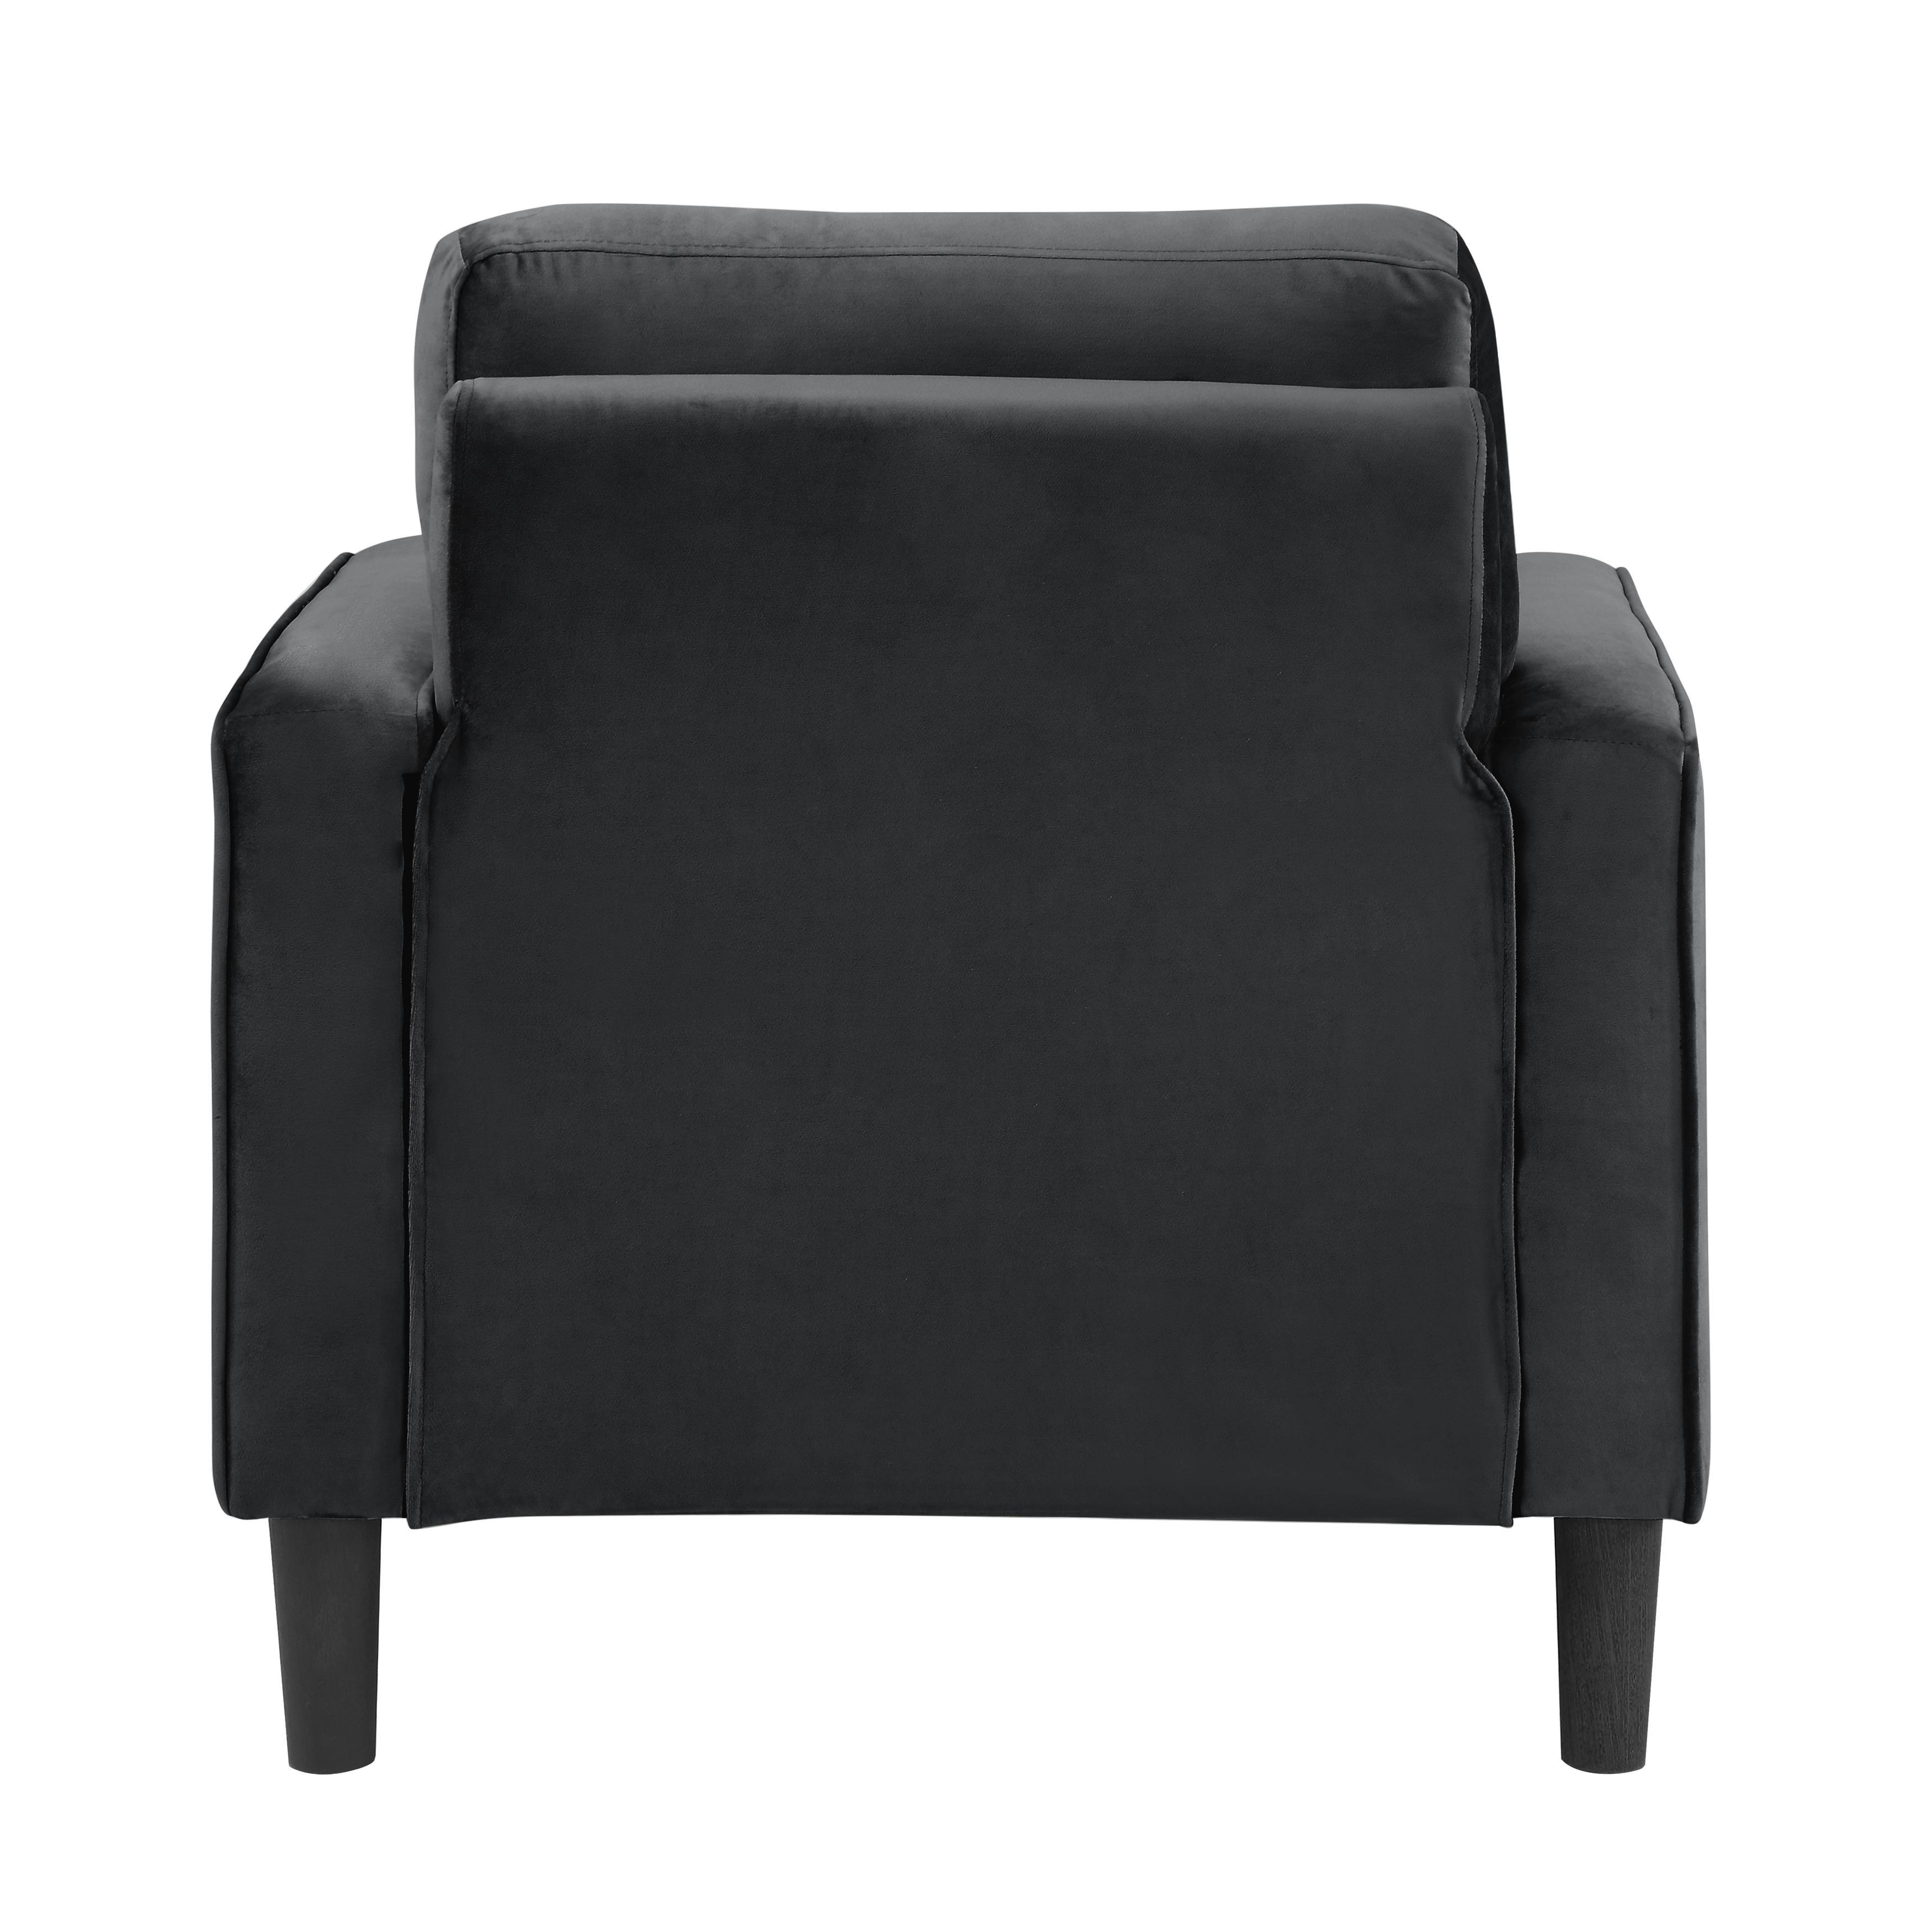 

    
Homelegance 9208BK-1 Beven Arm Chair Black 9208BK-1
